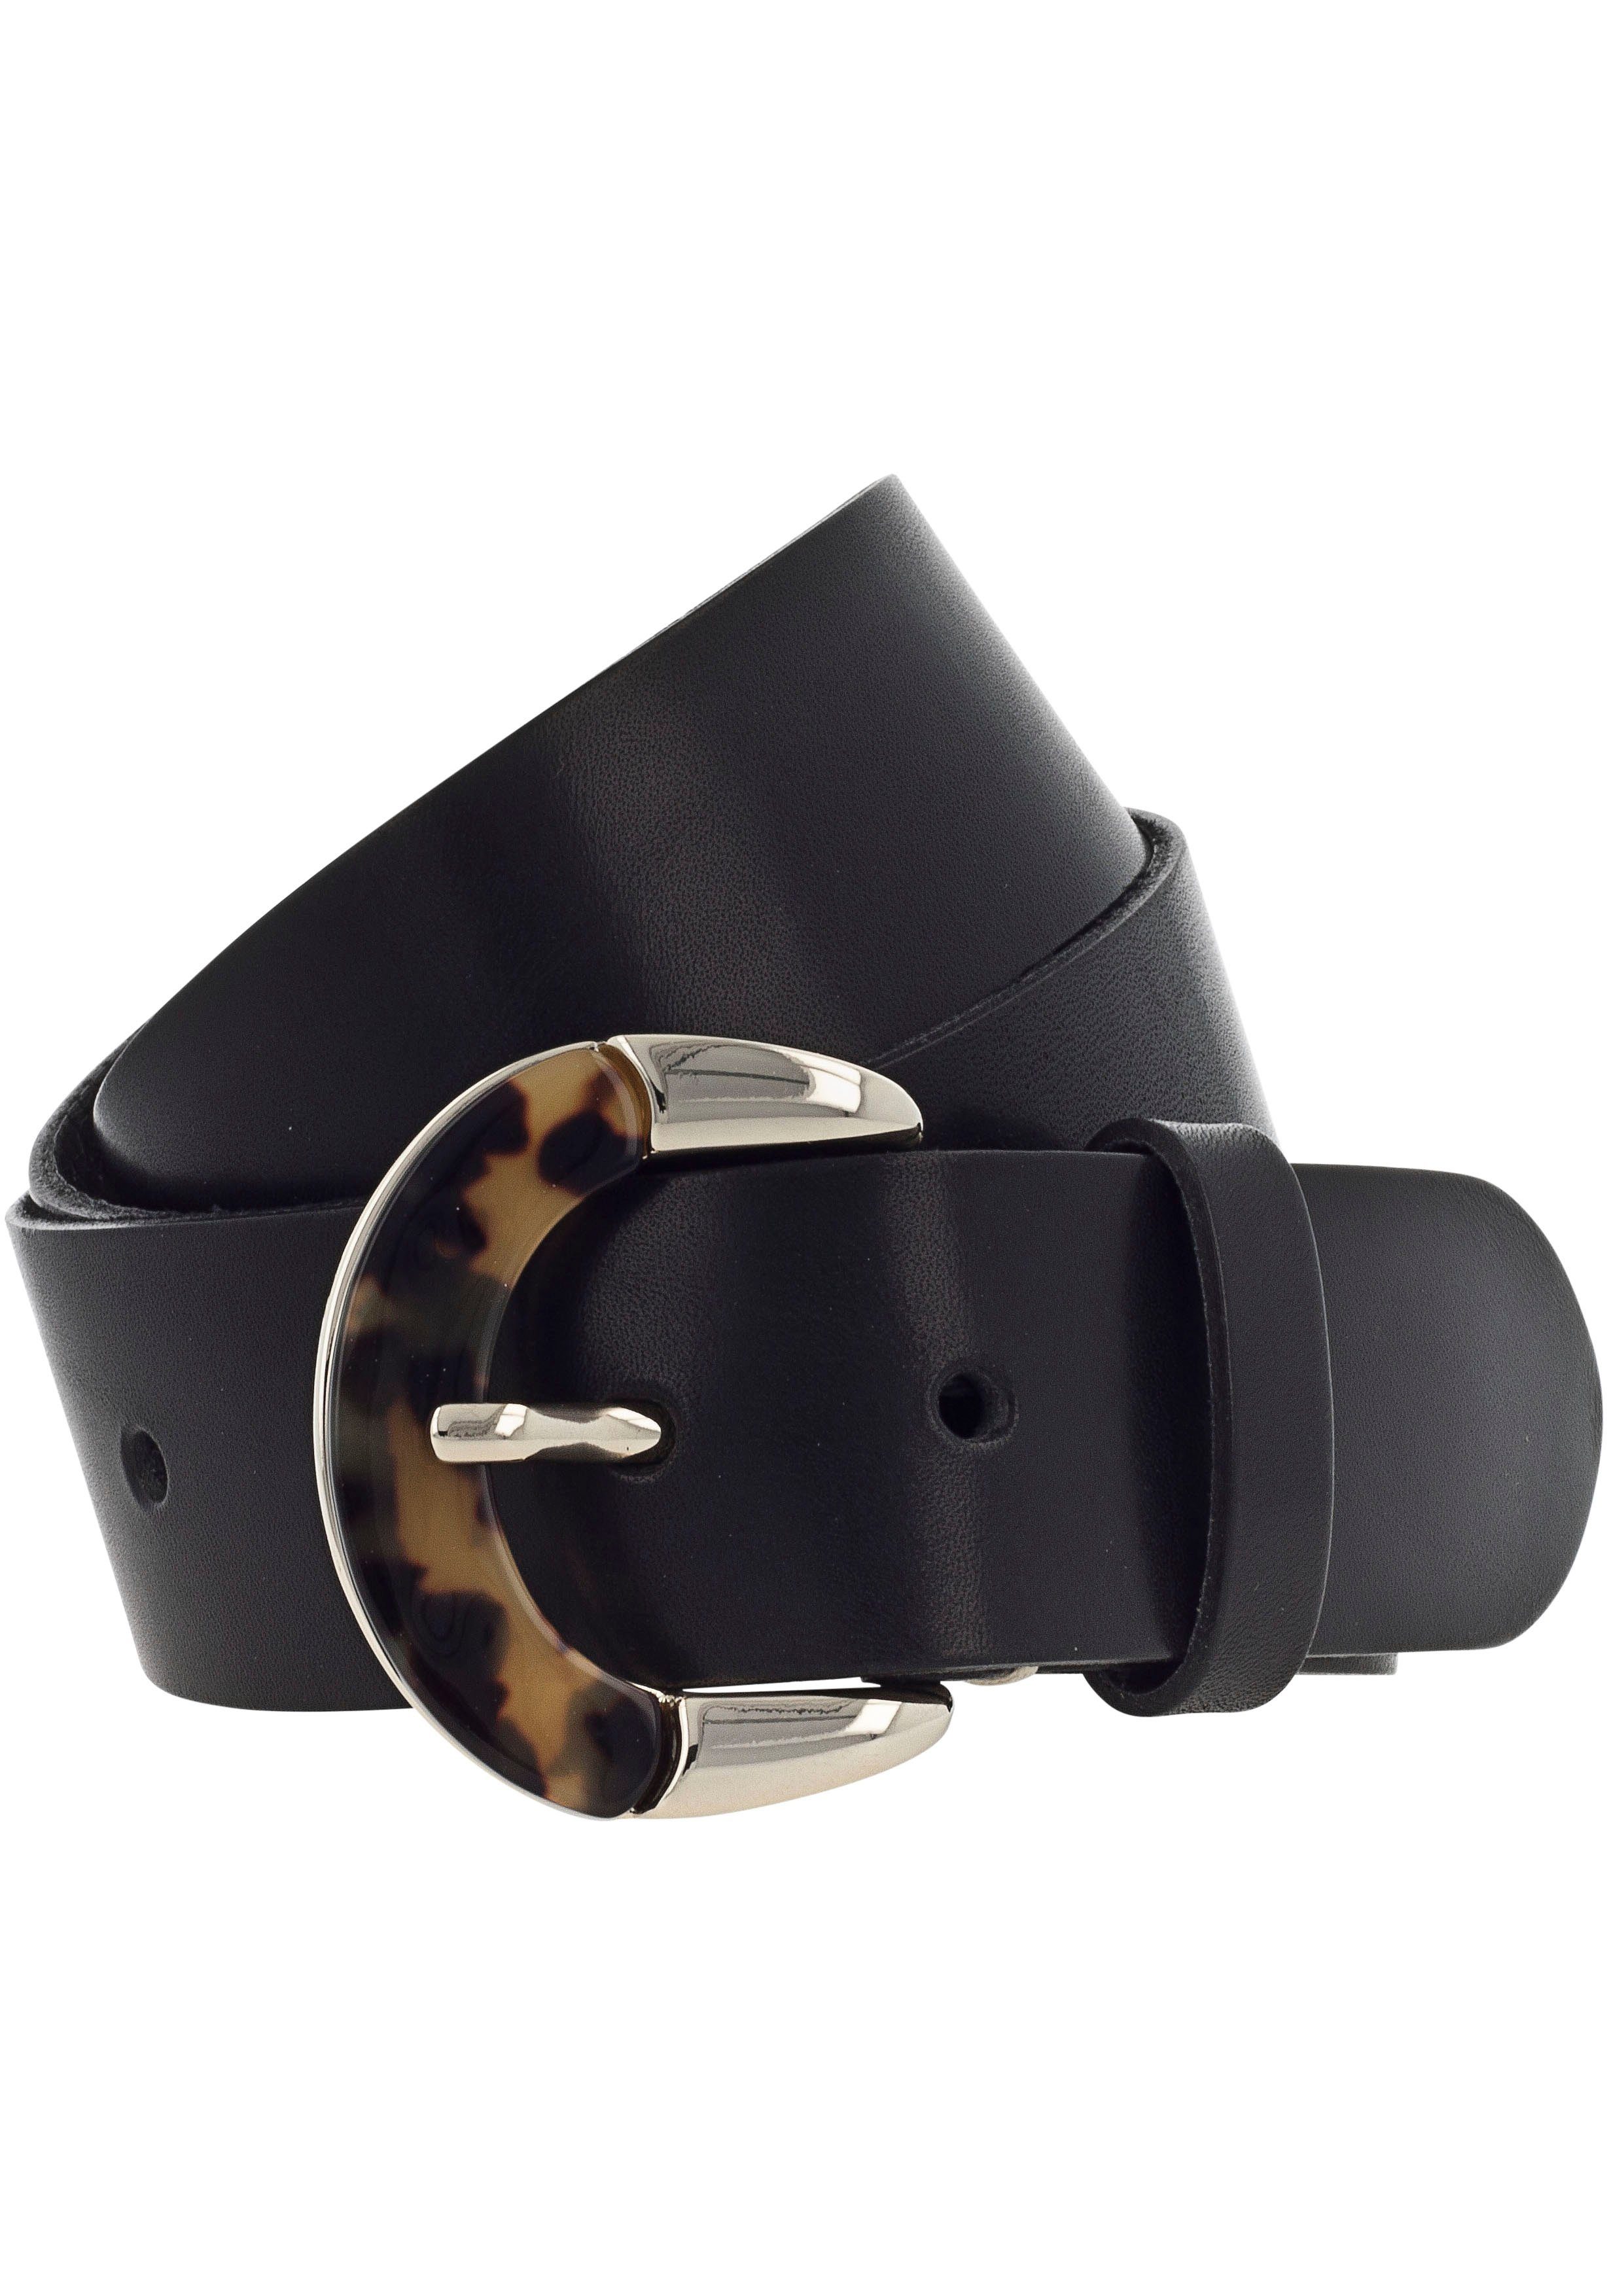 b.belt Animal-Design schwarz Ledergürtel mit Schließe